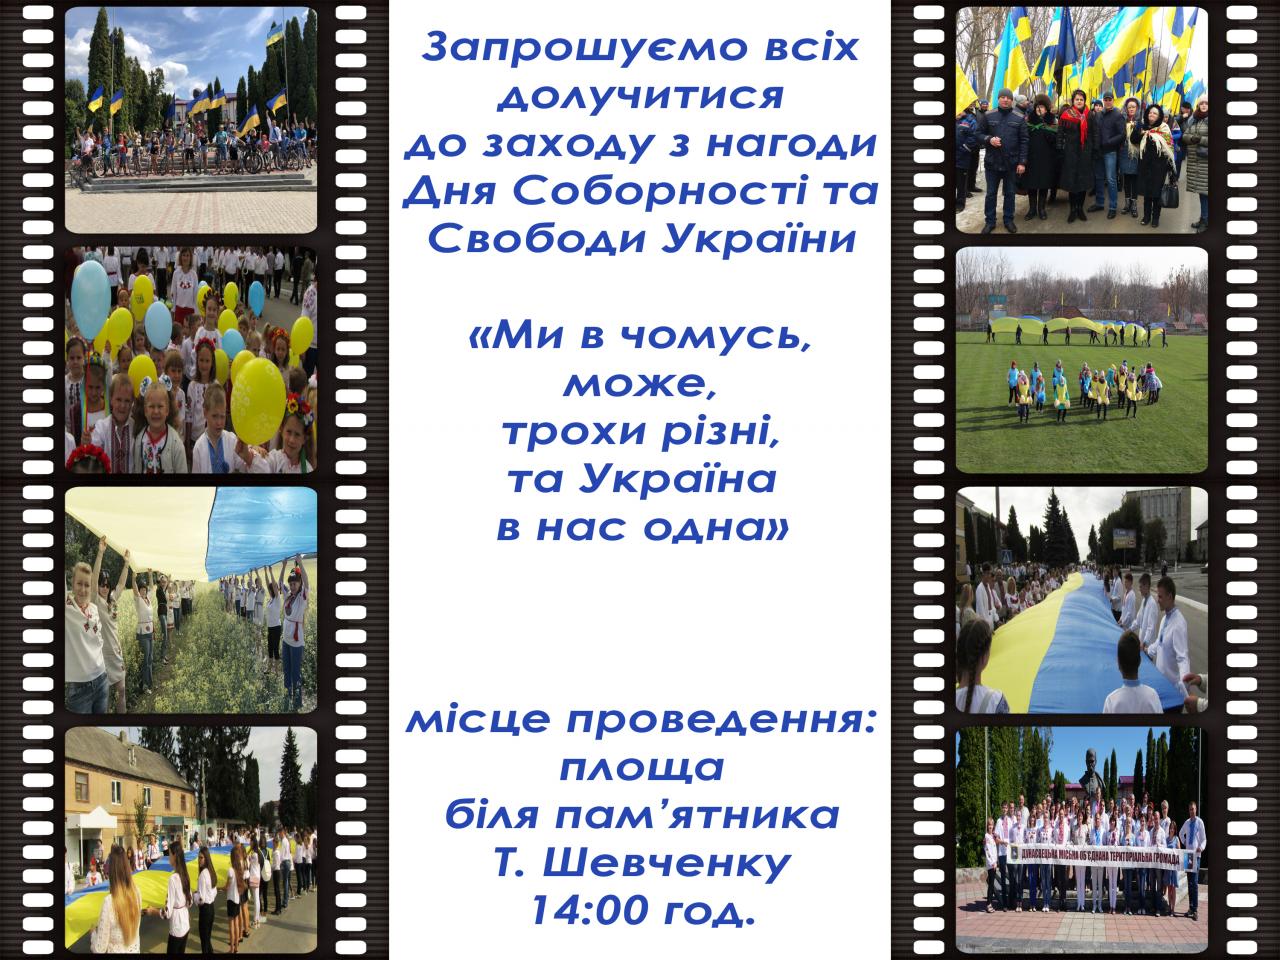 http://dunrada.gov.ua/uploadfile/archive_news/2020/01/21/2020-01-21_340/images/images-13604.jpg